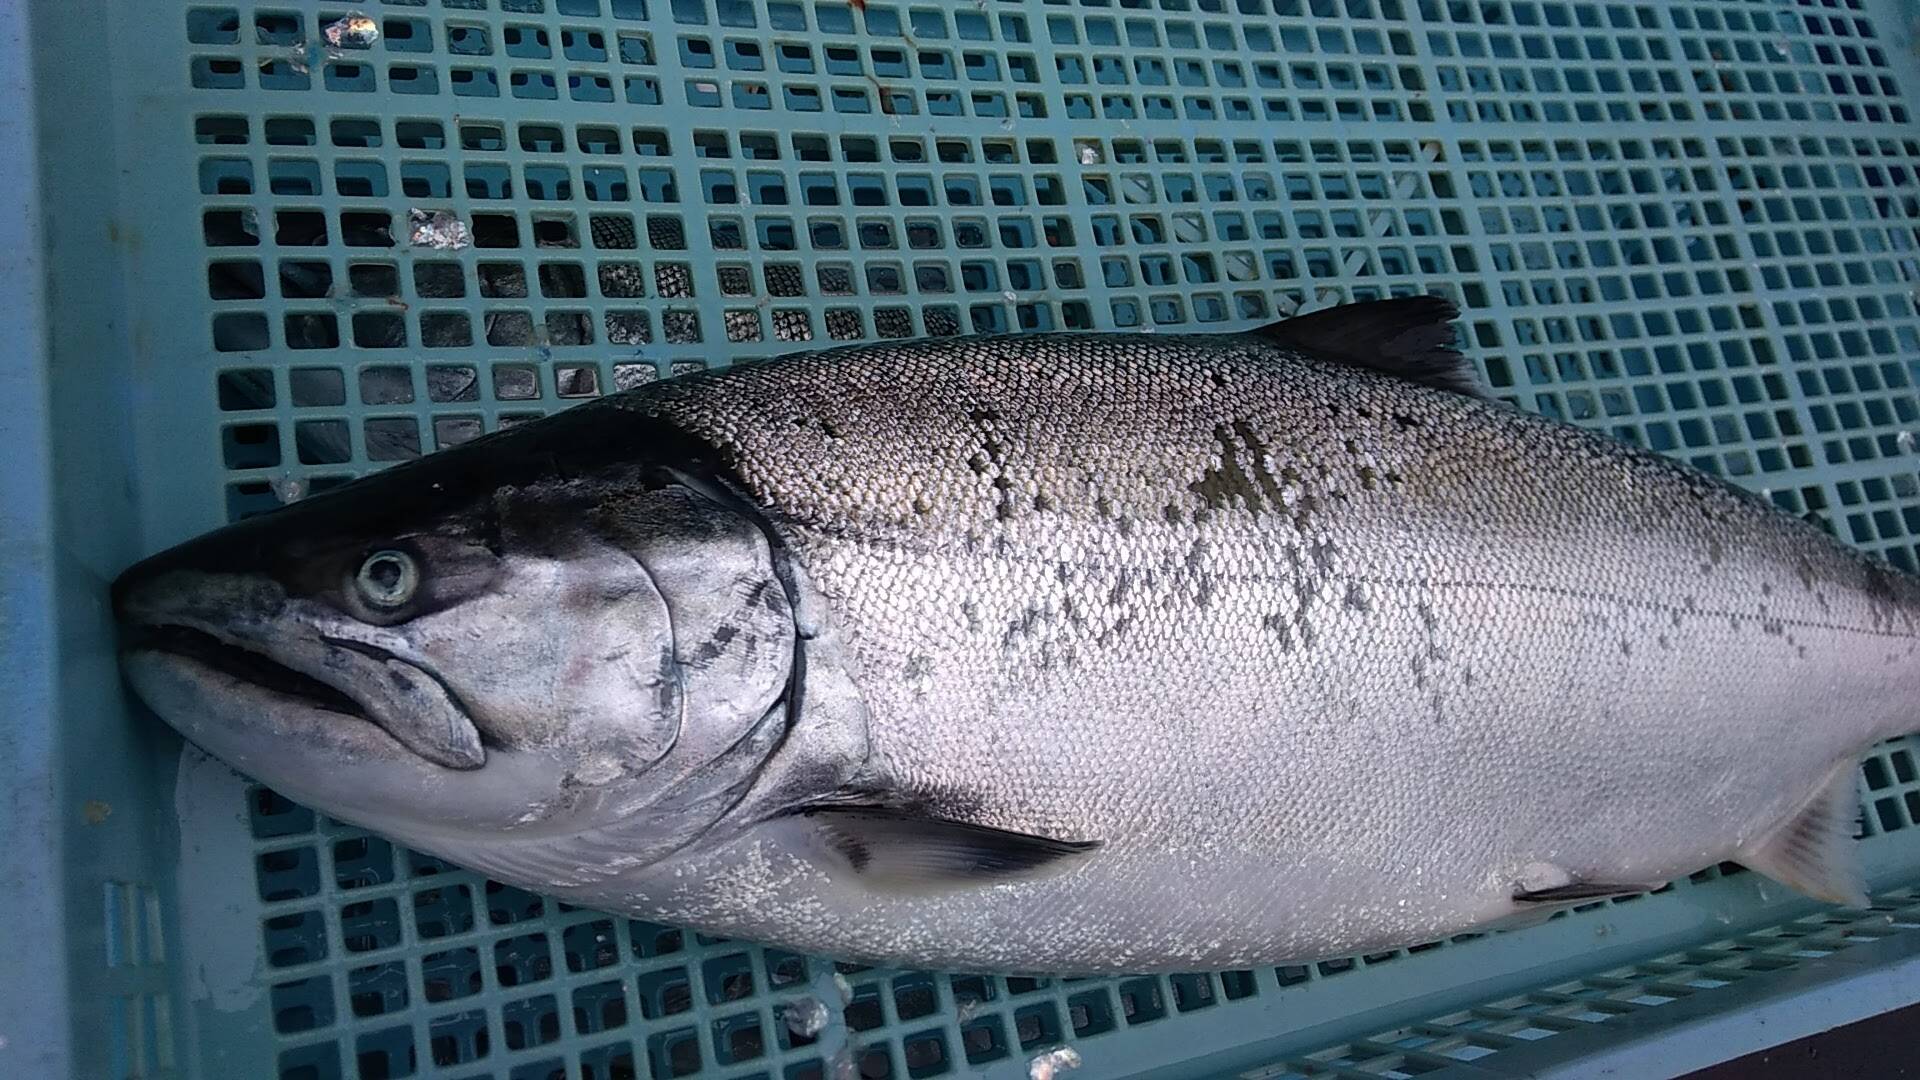 価格はそのまま サイズアップ 天然活〆サクラマス 1 5ｋ以上1匹 北海道産 食べチョク 農家 漁師の産直ネット通販 旬の食材を生産者直送